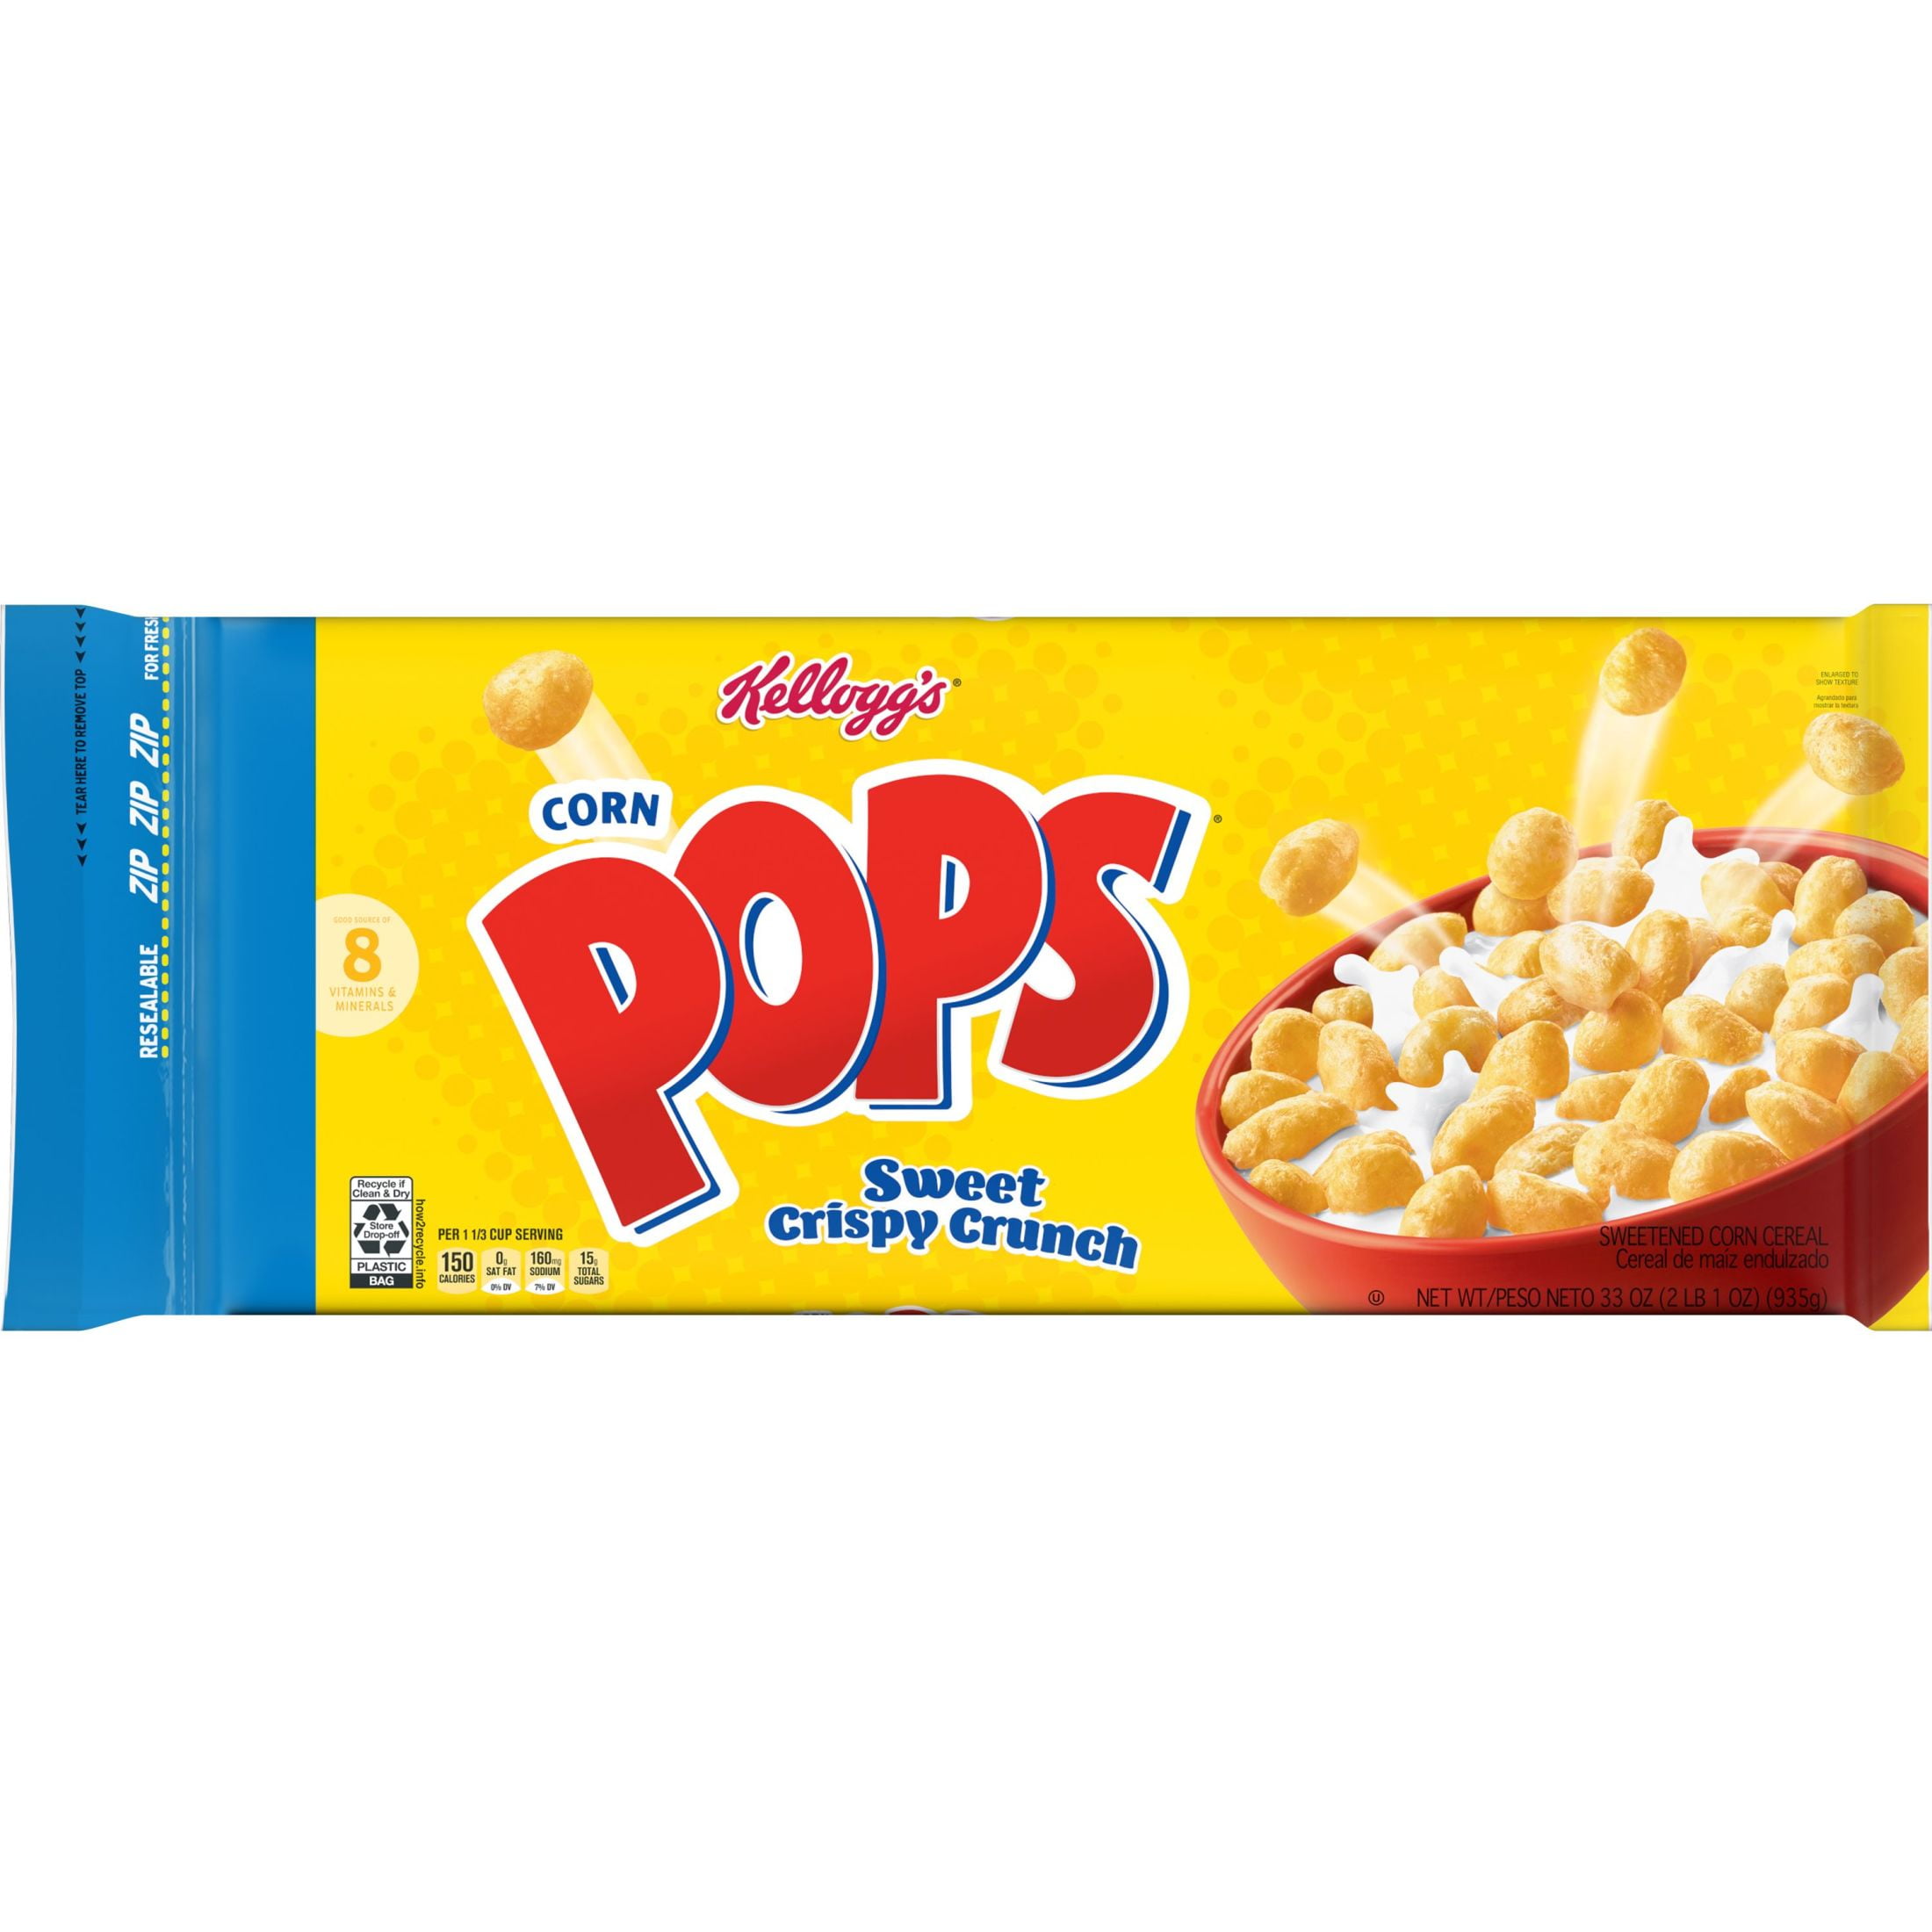 Kellogg's Corn Pops Original Cold Breakfast Cereal, 33 oz Box